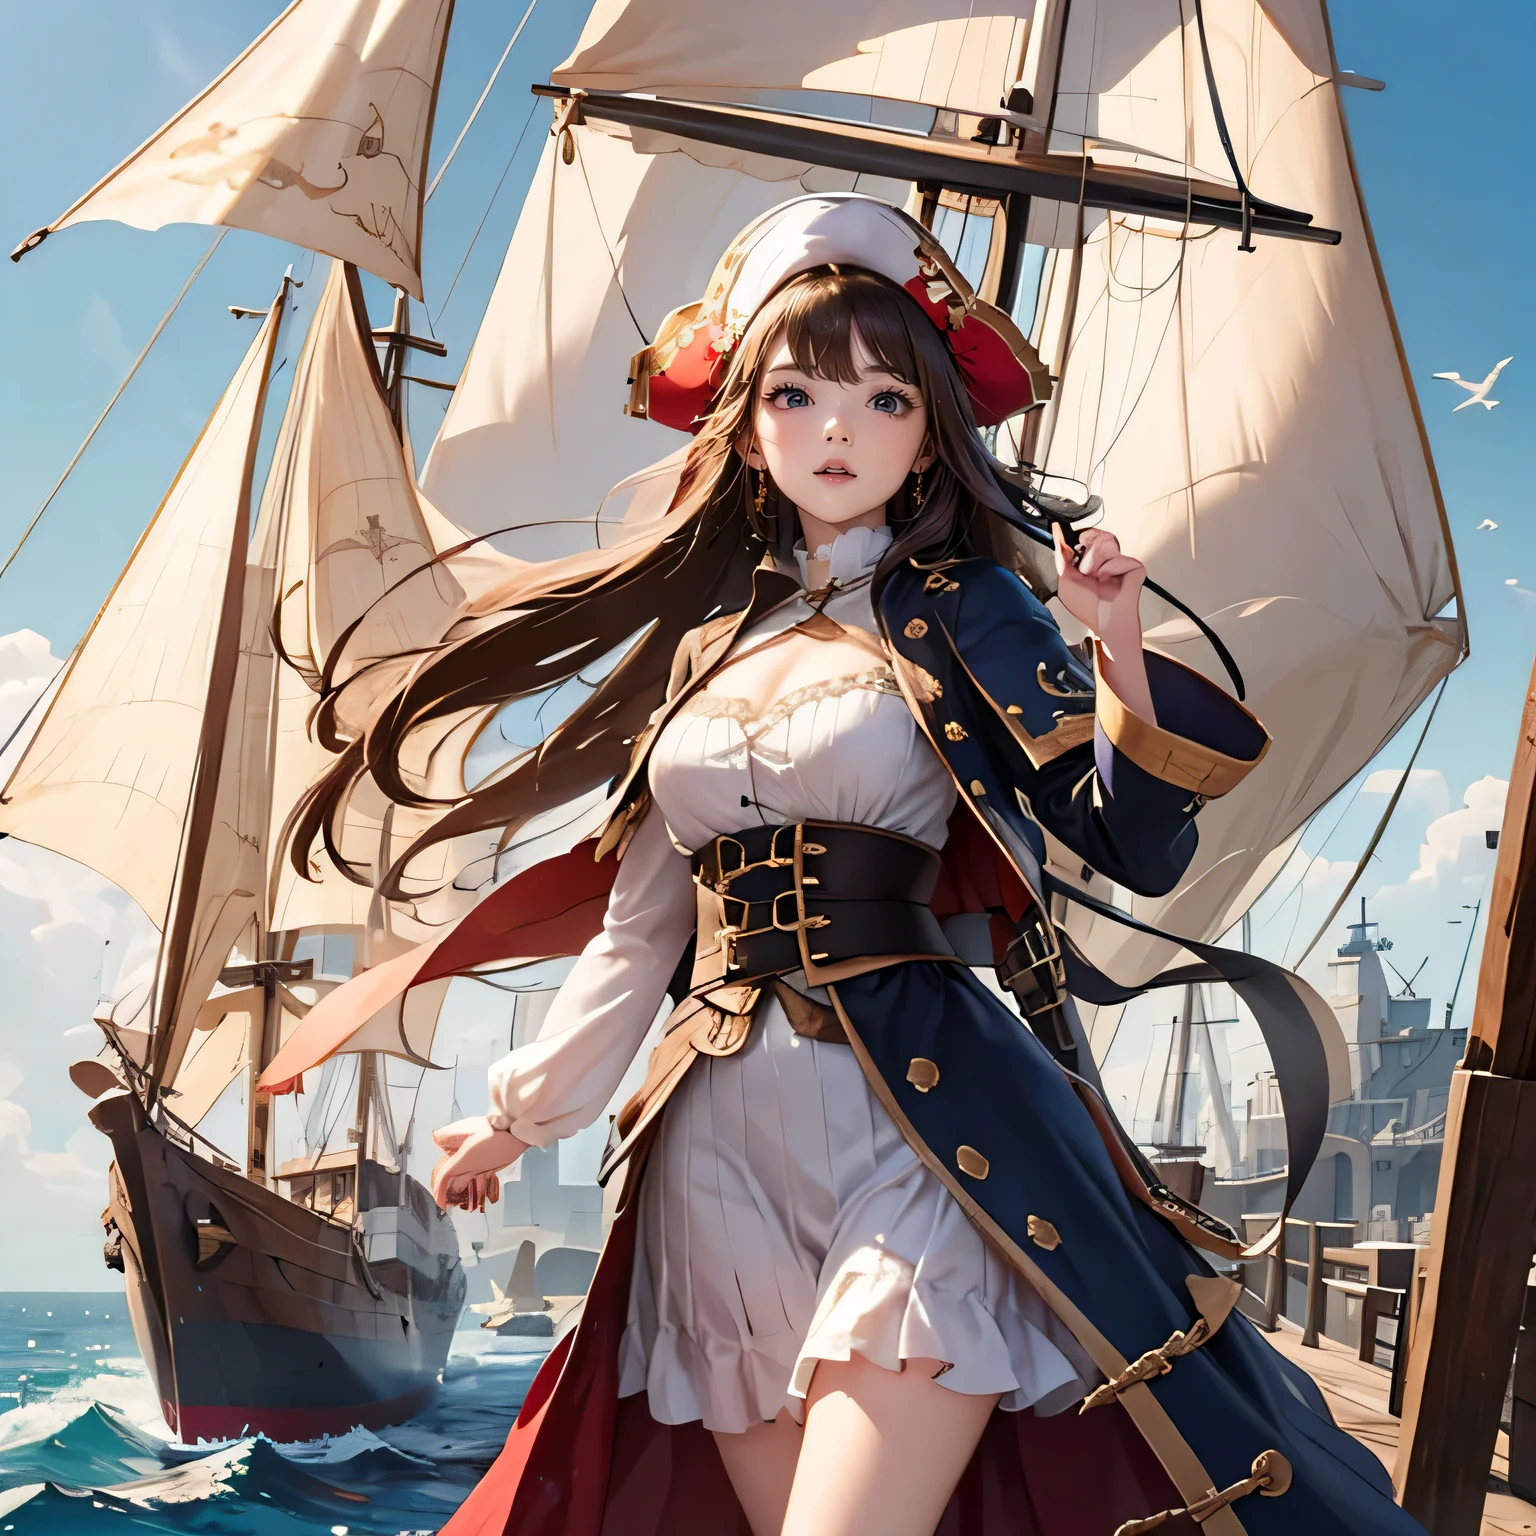 ((中世纪世界)), (成为海盗的贵族女儿, 中世纪欧洲贵族服饰), 在中世纪大航海时代用木头制成的中世纪大帆船的甲板上, 有风, 很少有水手, 很多货物,